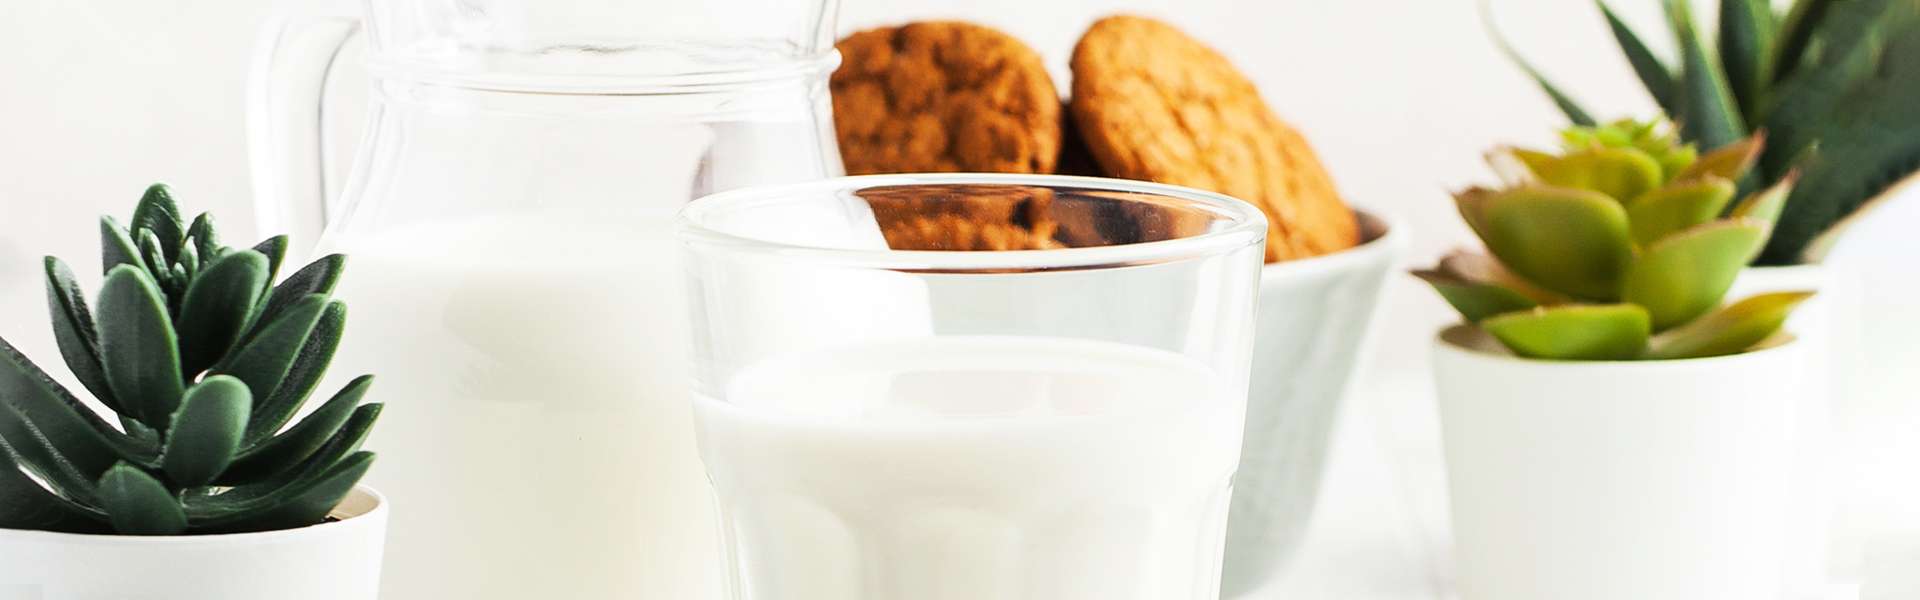 Milch oder keine Milch?